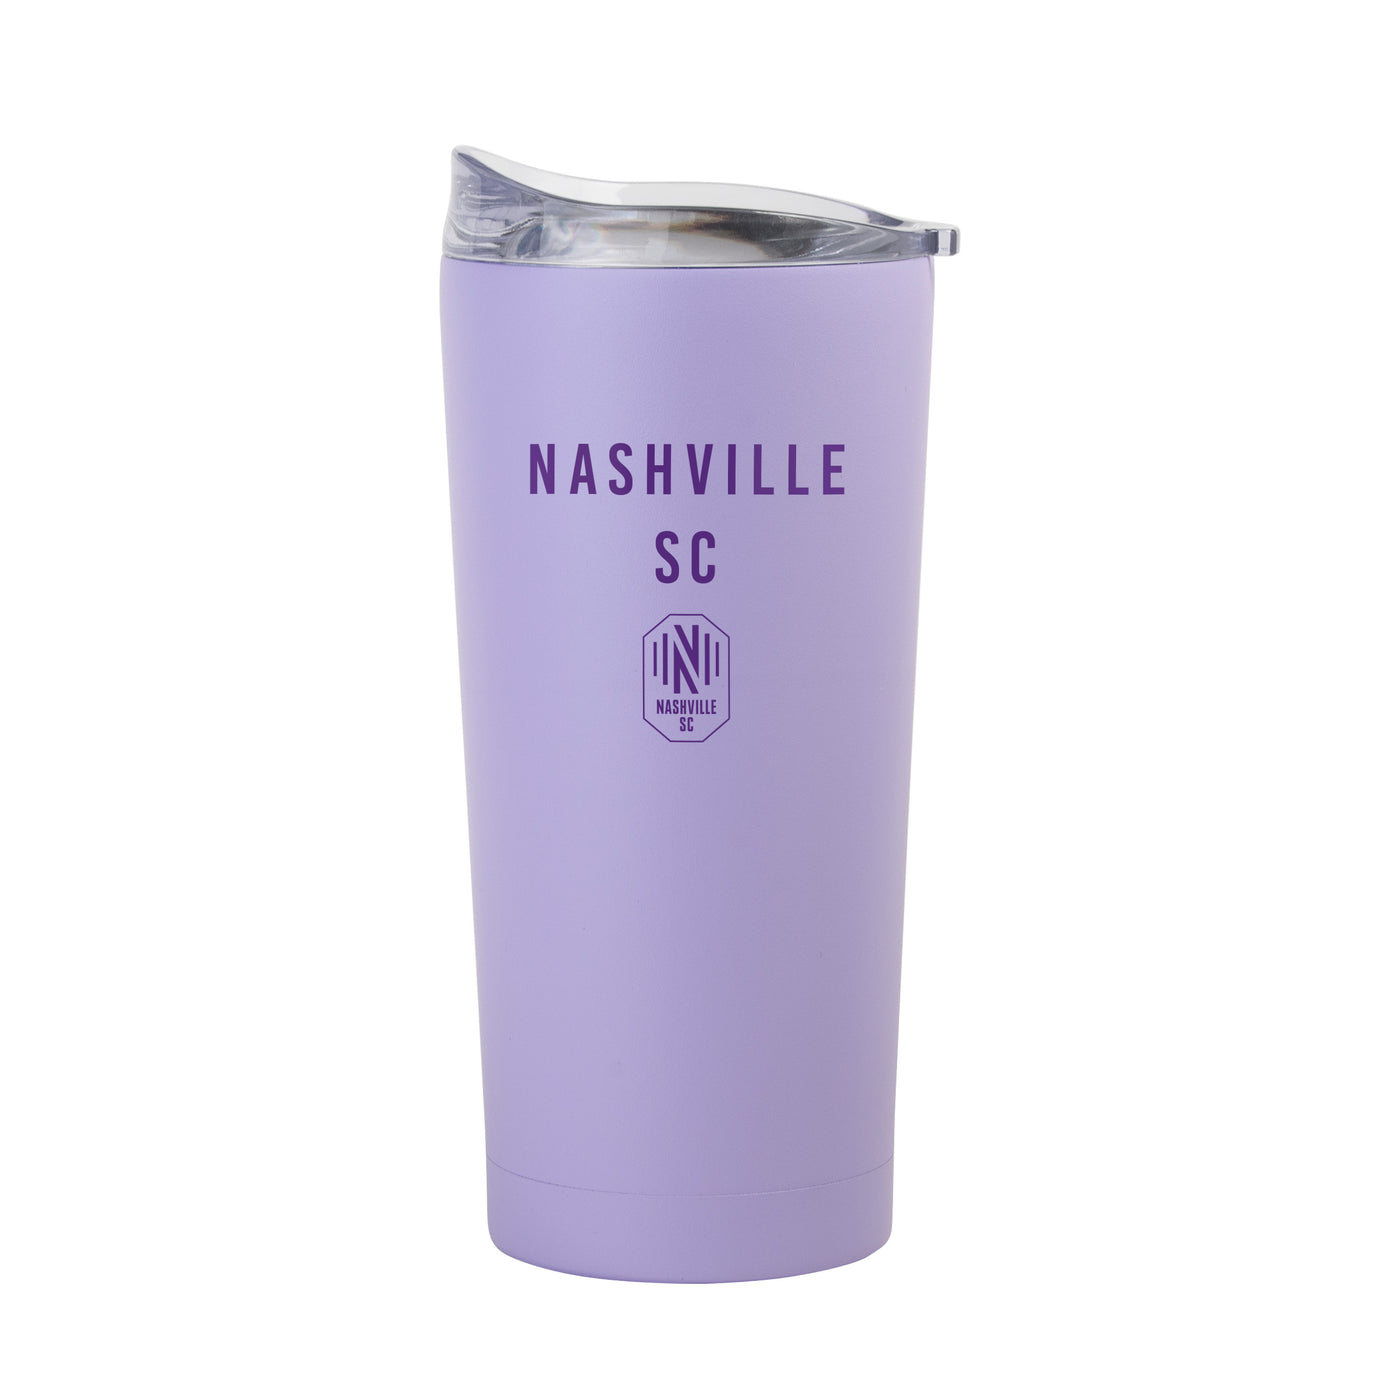 Nashville SC 20oz Tonal Lavender Powder Coat Tumbler